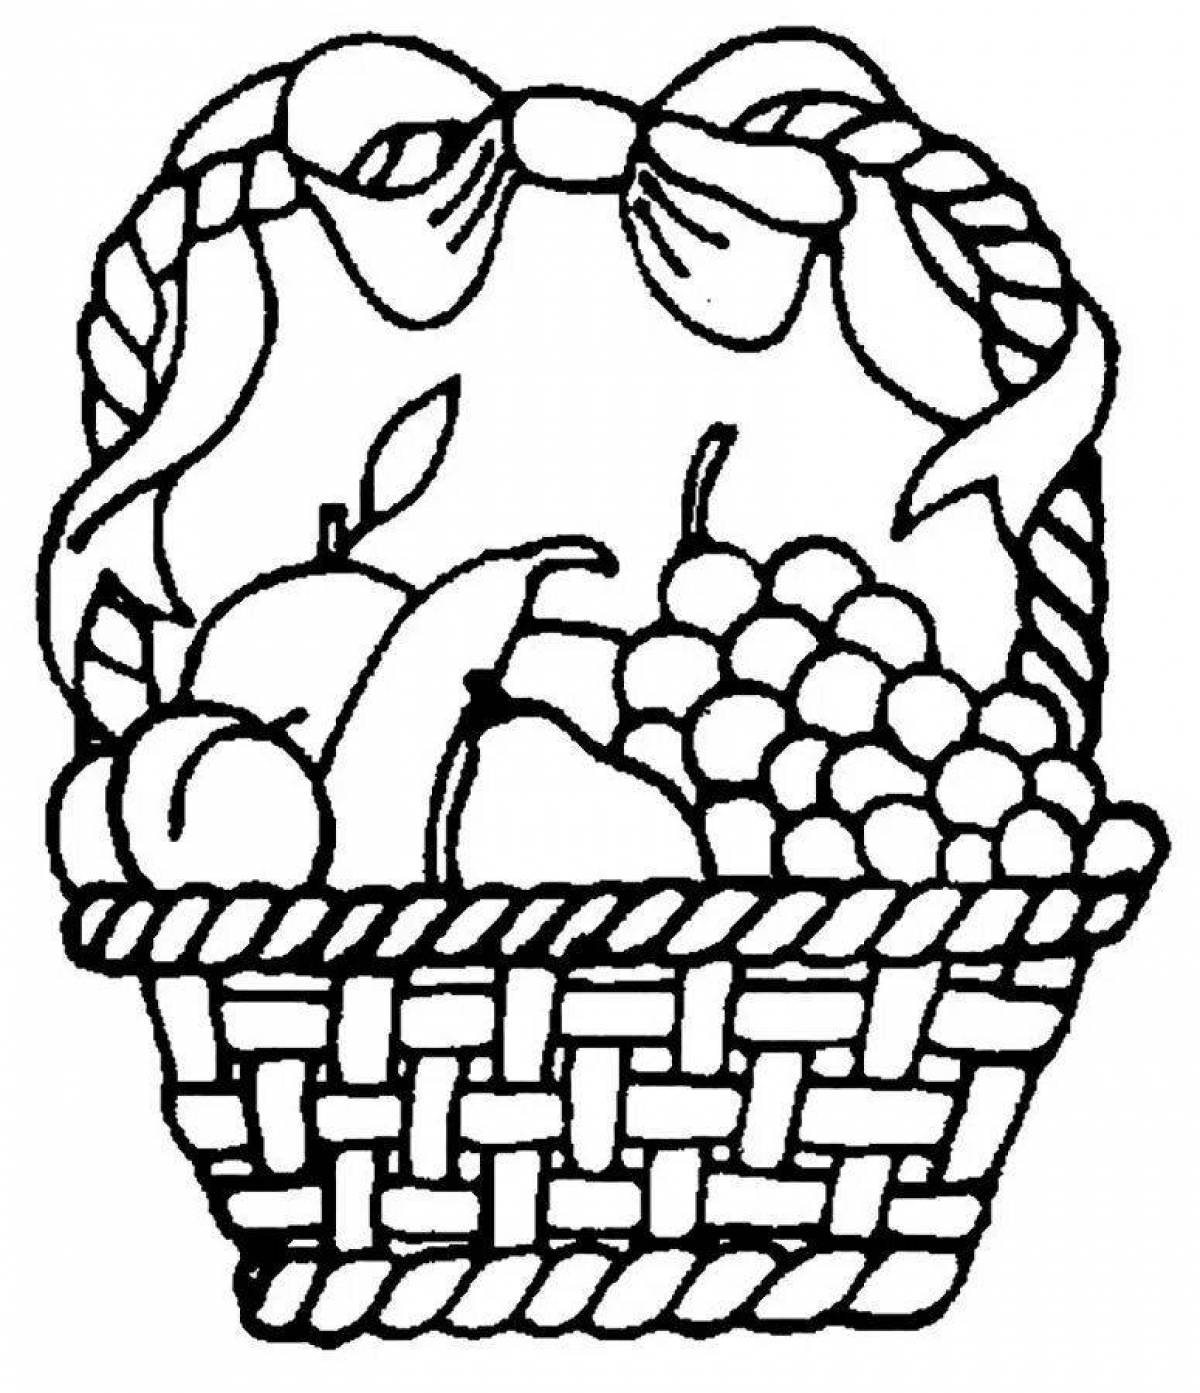 Vegetable basket #4